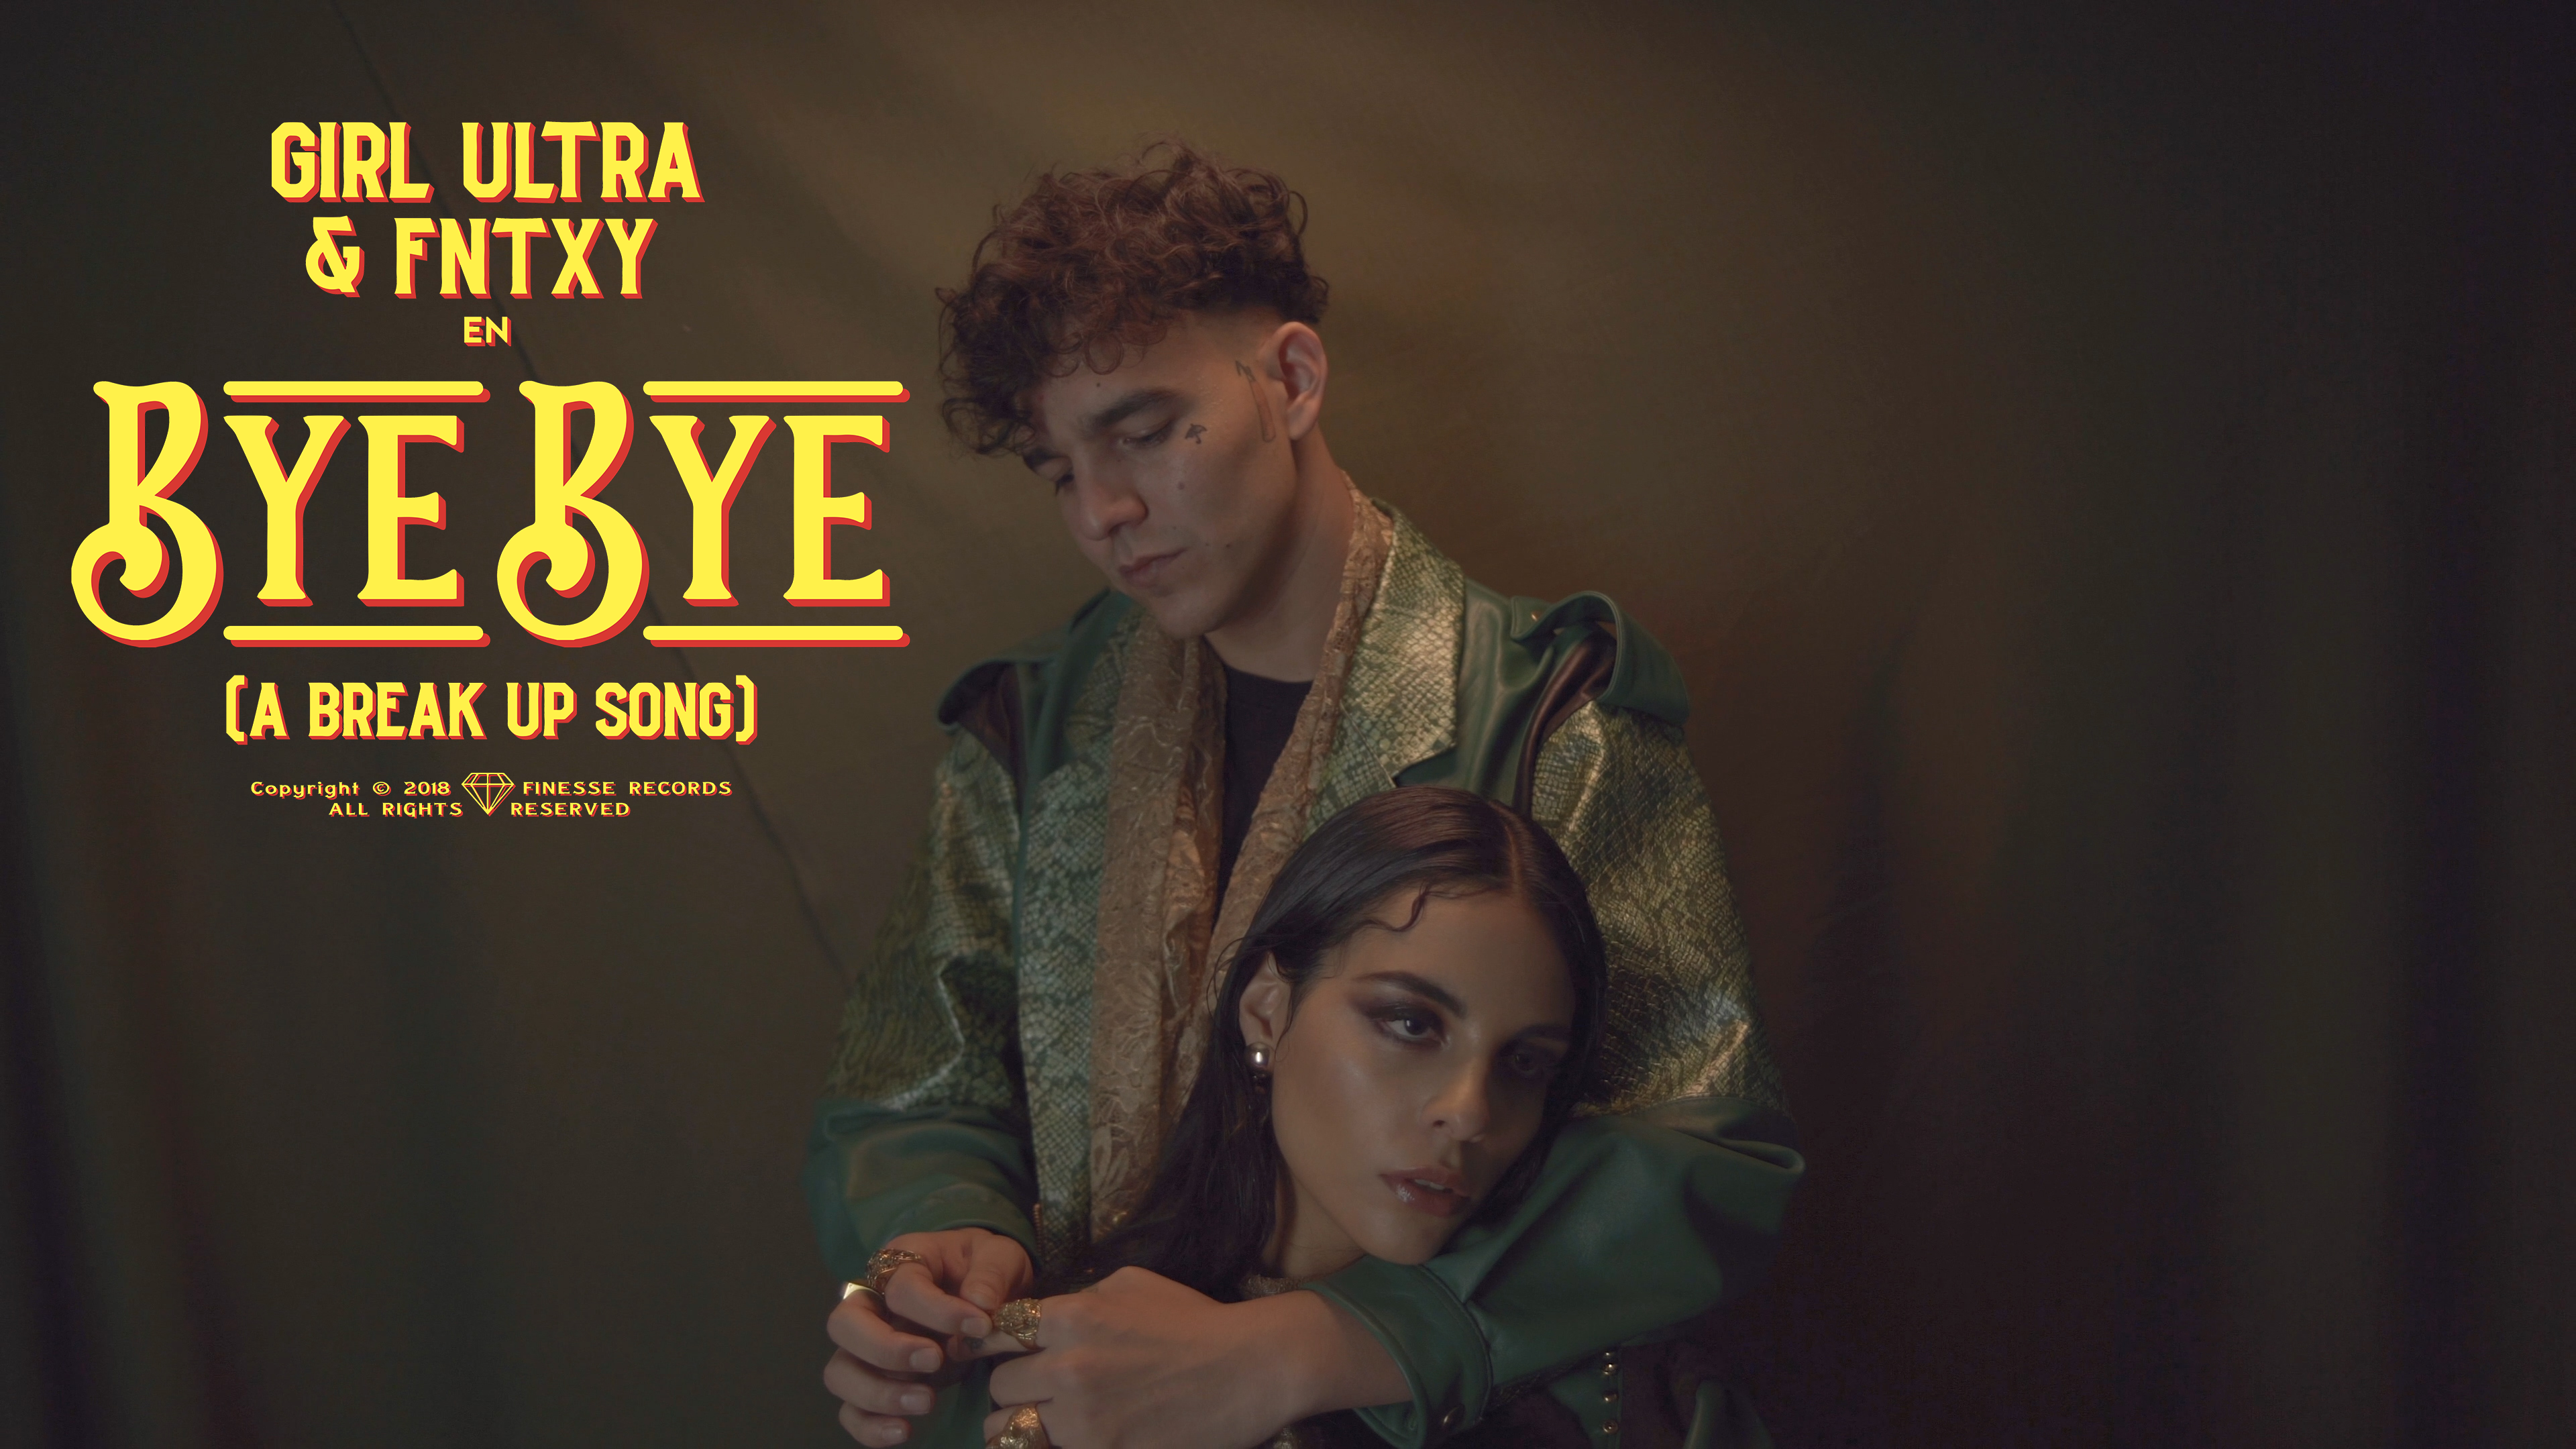 Girl Ultra comparte el videoclip de “Bye Bye”, su nuevo sencillo en colaboración con Fntxy